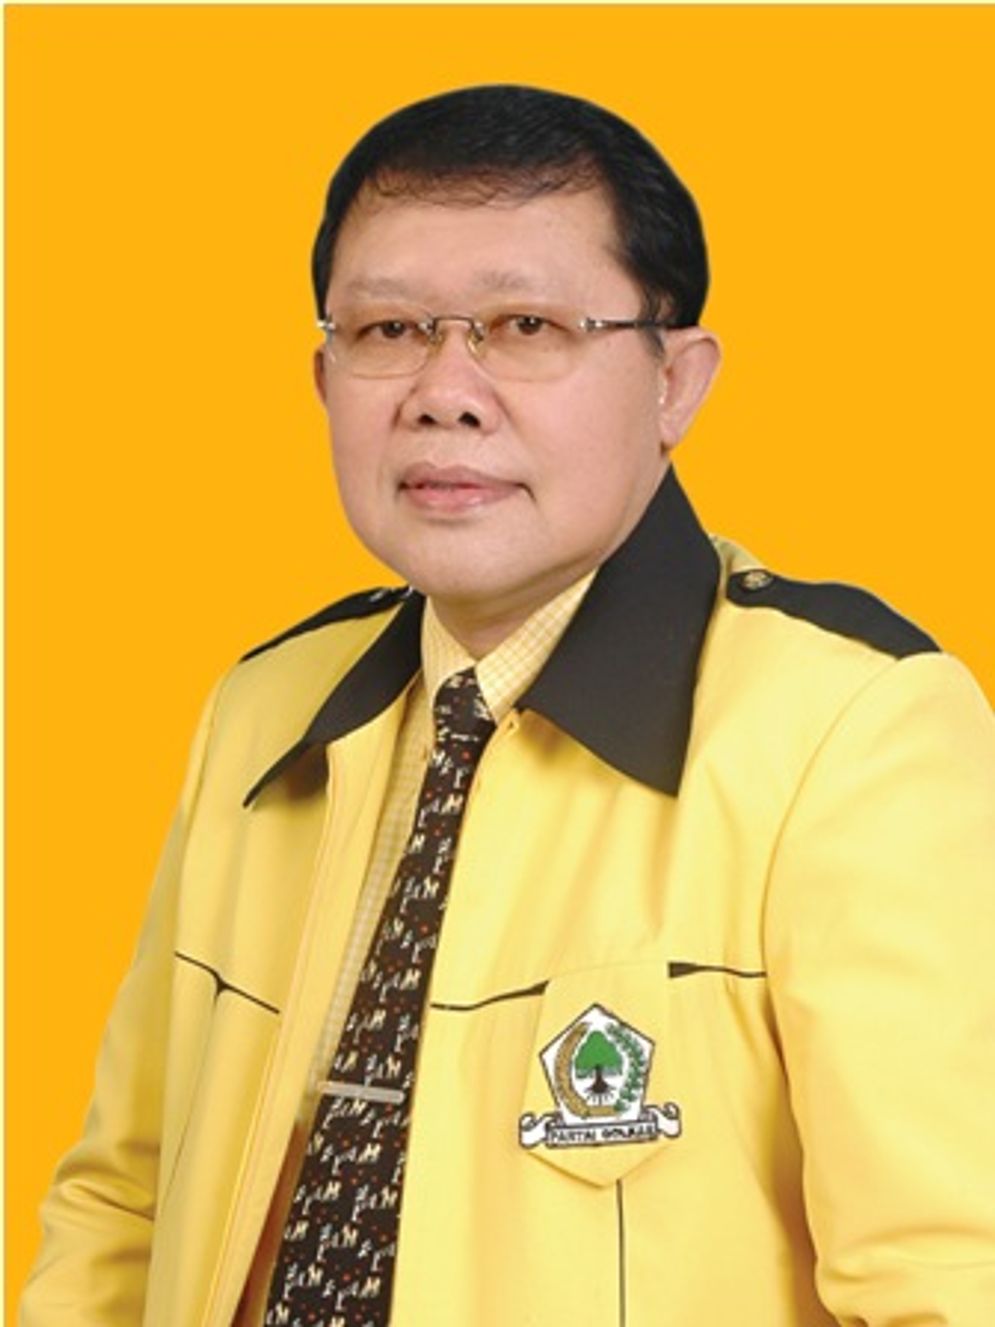 Alm. Dr. H. Gatot Sudjito, M.Si, Anggota Komisi V DPRRI Tutup Usia